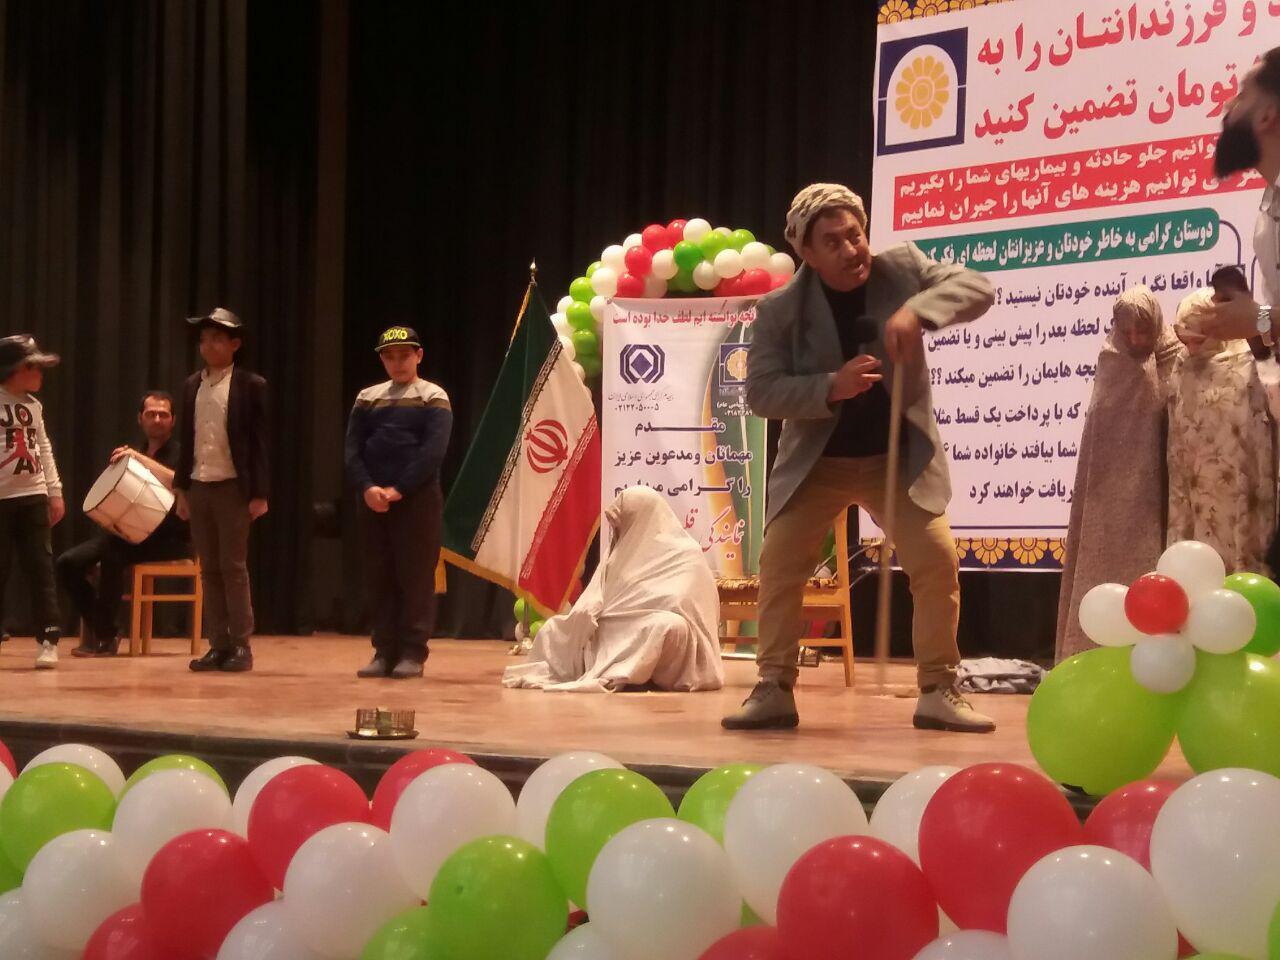 آخرین روز اجرای نمایش سارابئیم خالا بمناسبت چهلمین سالگرد پیروزی انقلاب اسلامی در سالن ارشاد خوی - به روایت از تصویر